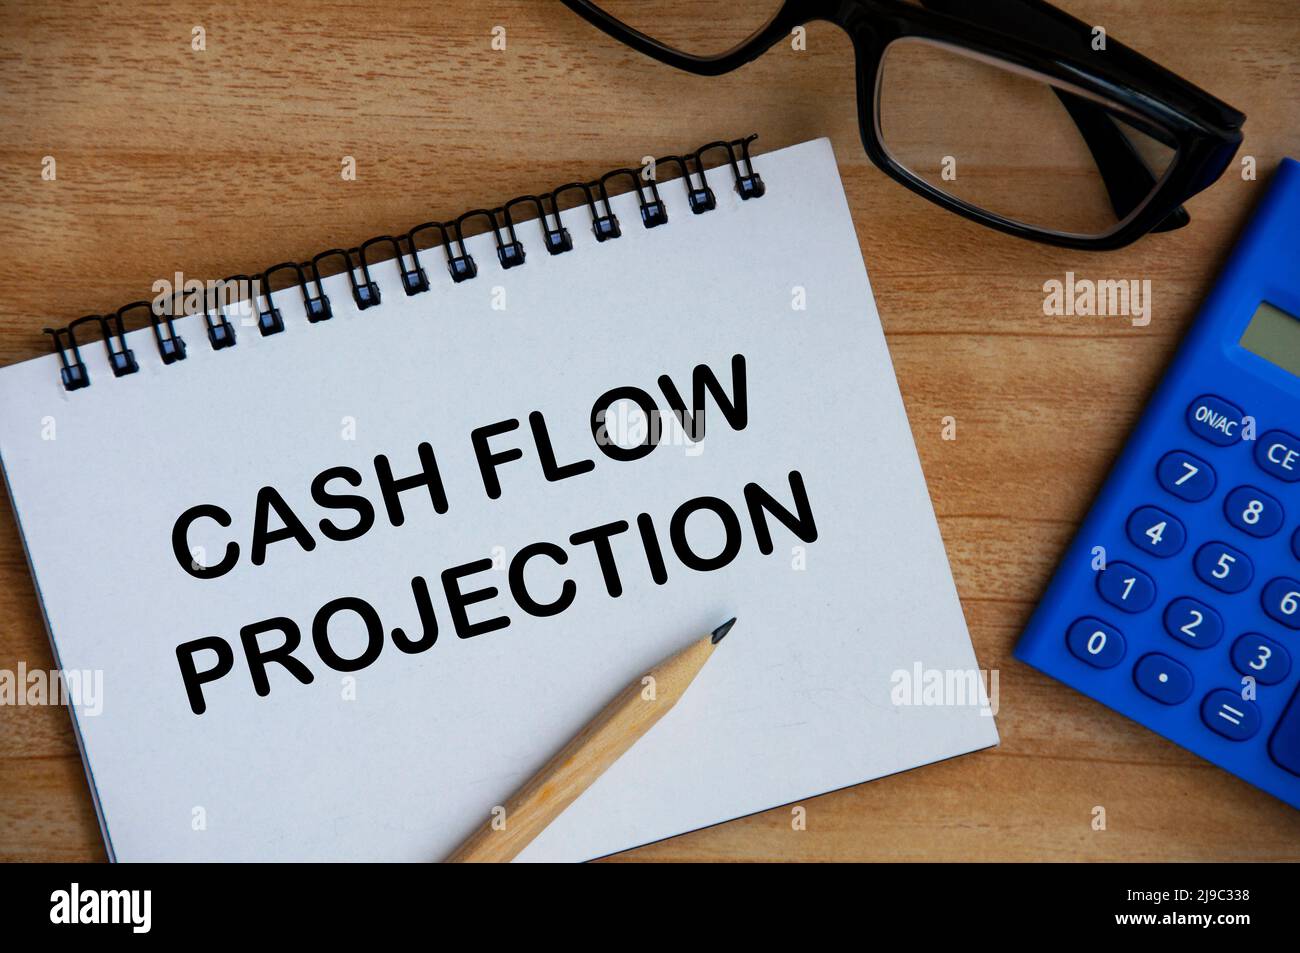 Cashflow-Projektion Text auf Notizblock mit Rechner, Bleistift und Brille Hintergrund. Geschäftskonzept Stockfoto